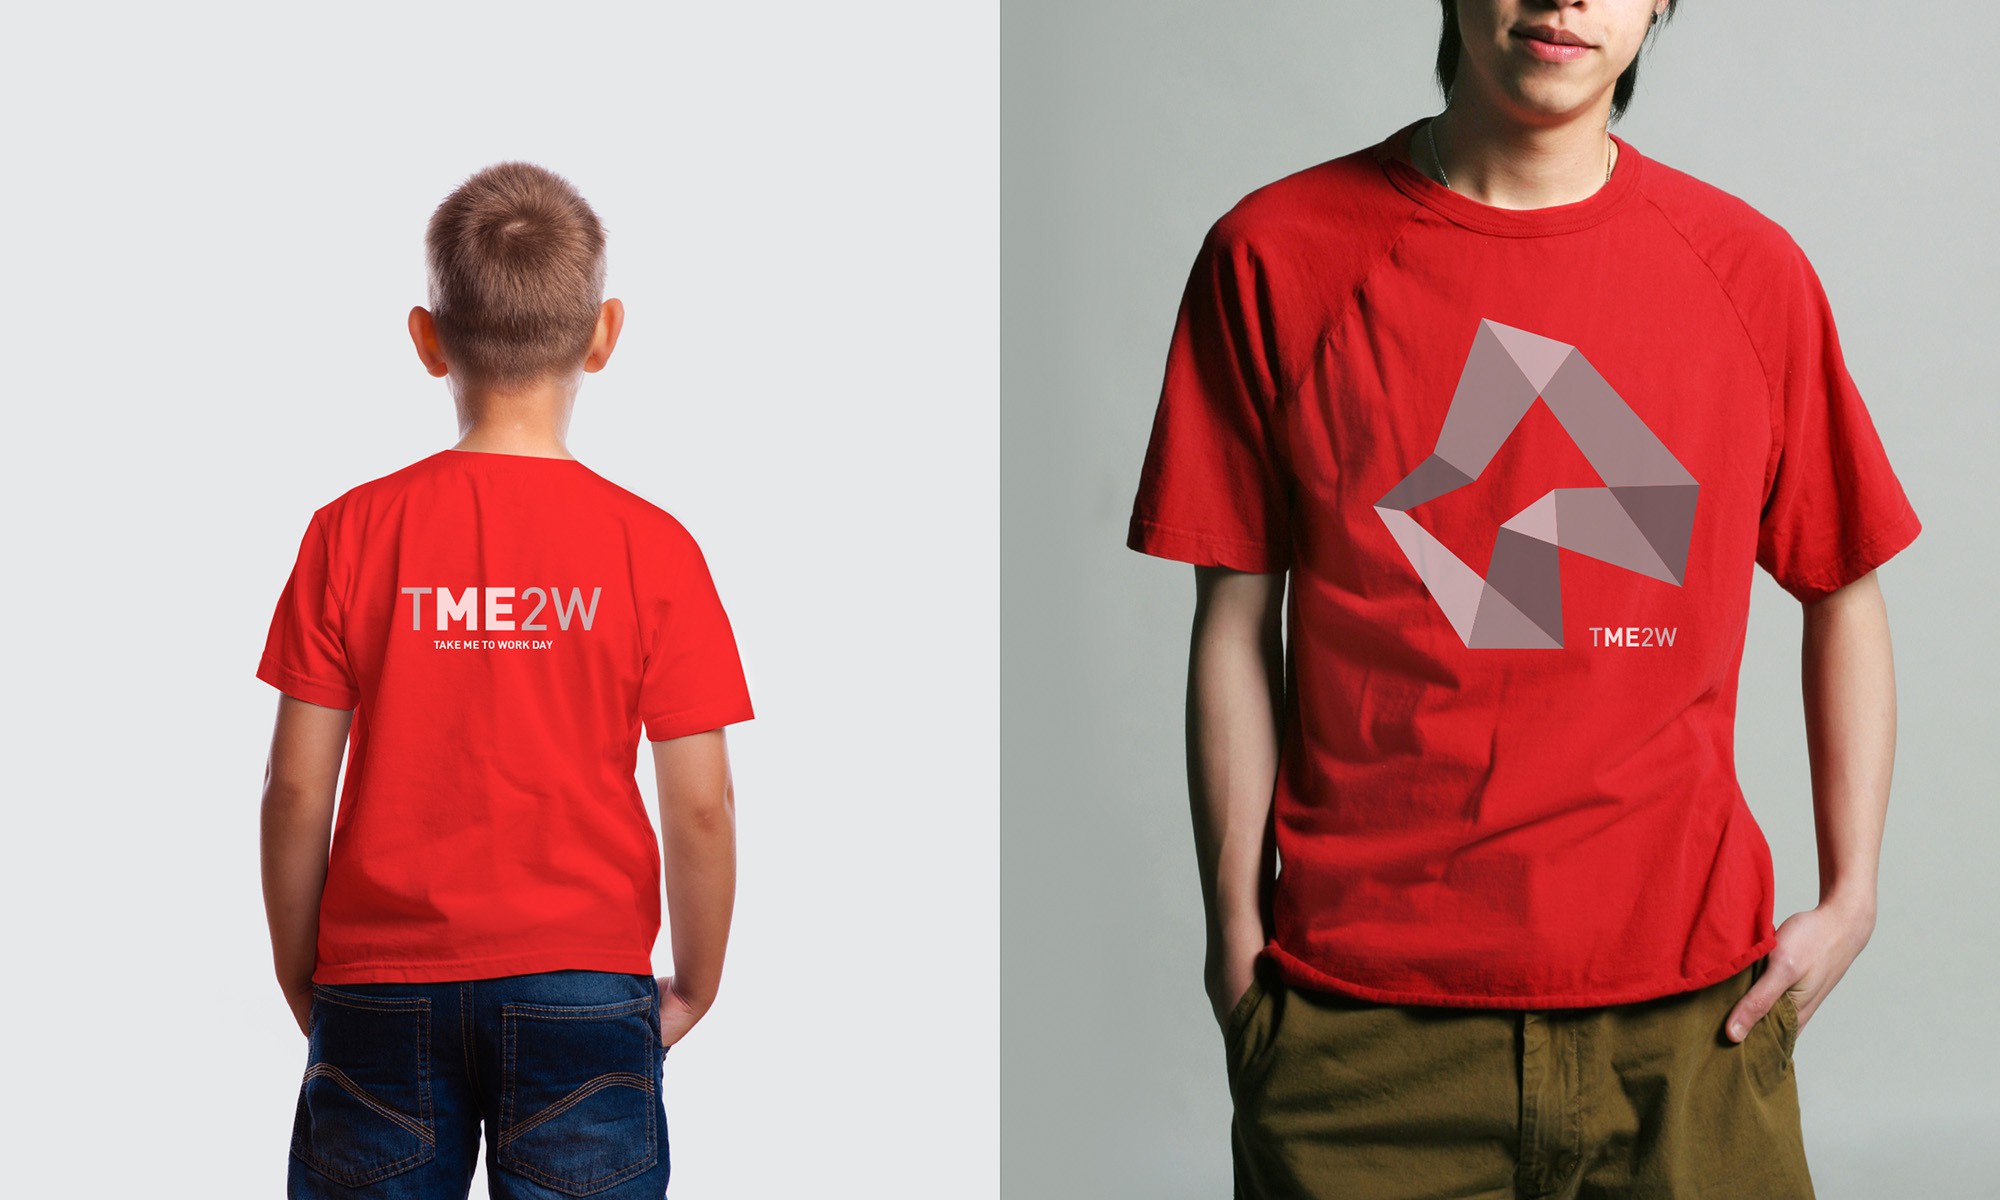 MFS_TME2W_shirt_2000x1200px